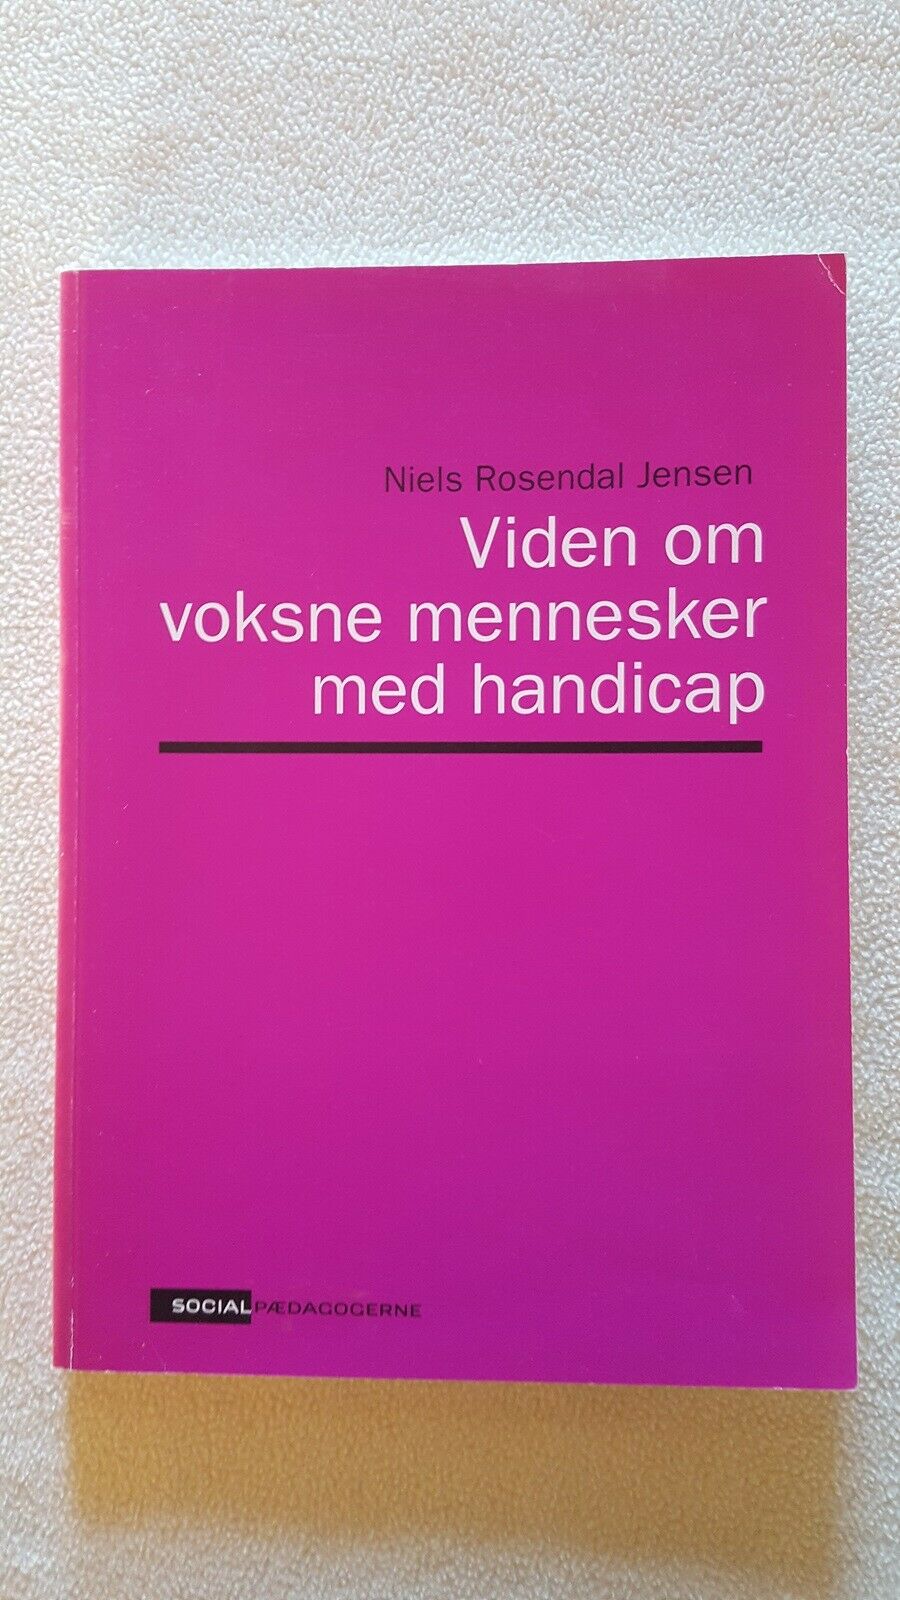 Viden om mennesker med handicap, Niels Rosendal Jensen